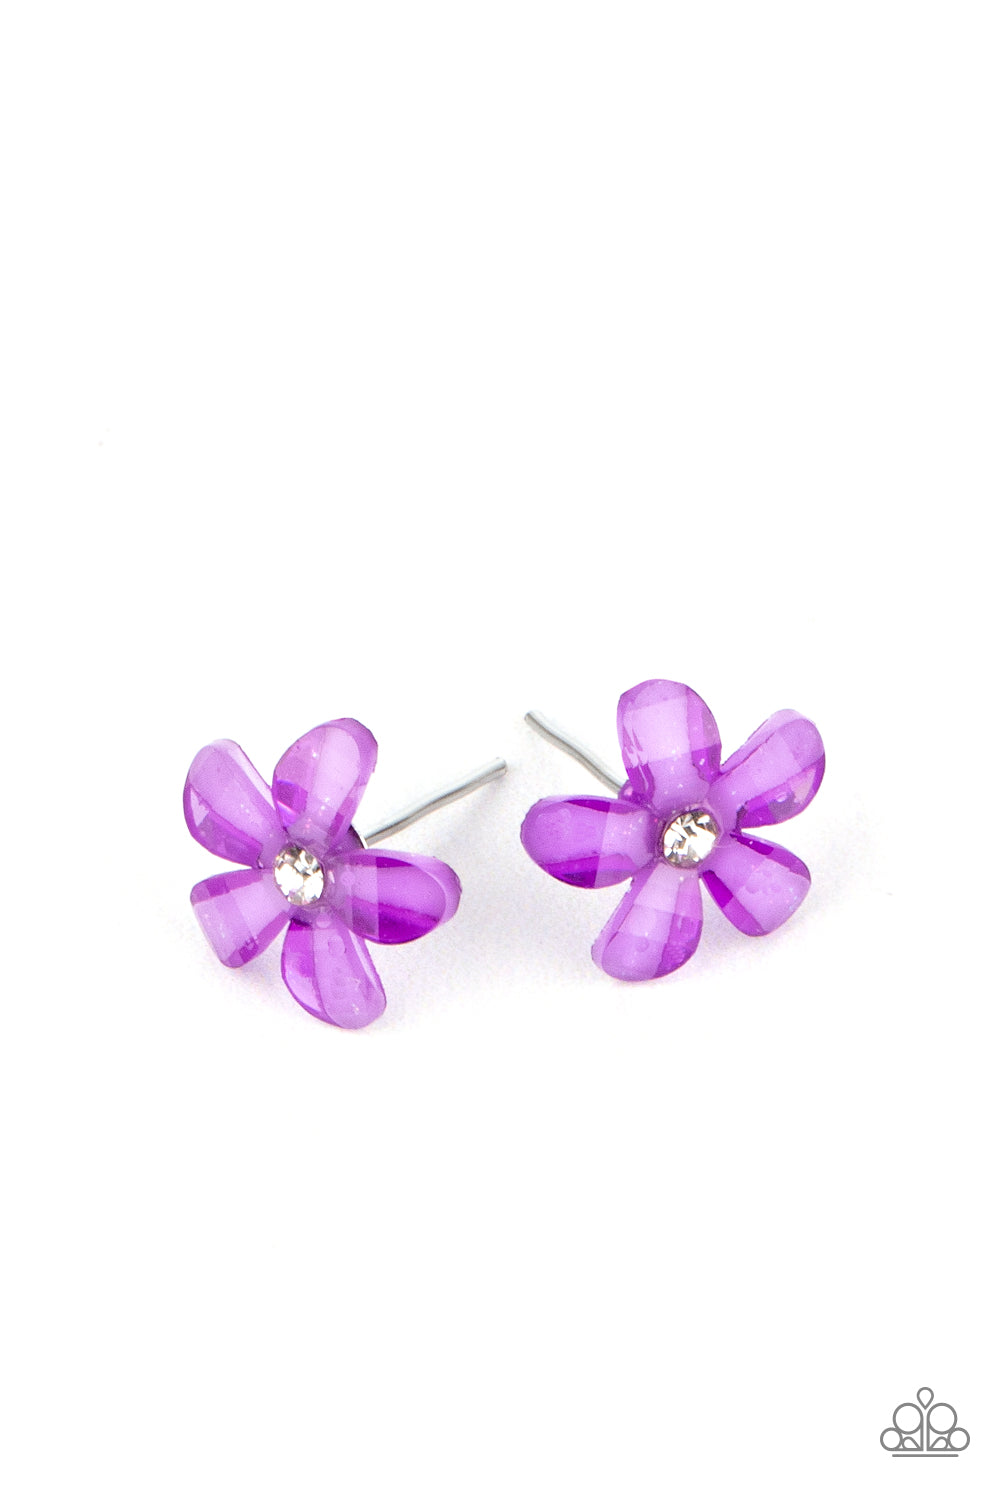 Starlet Shimmer Flower Glassy Rhinestone Earring